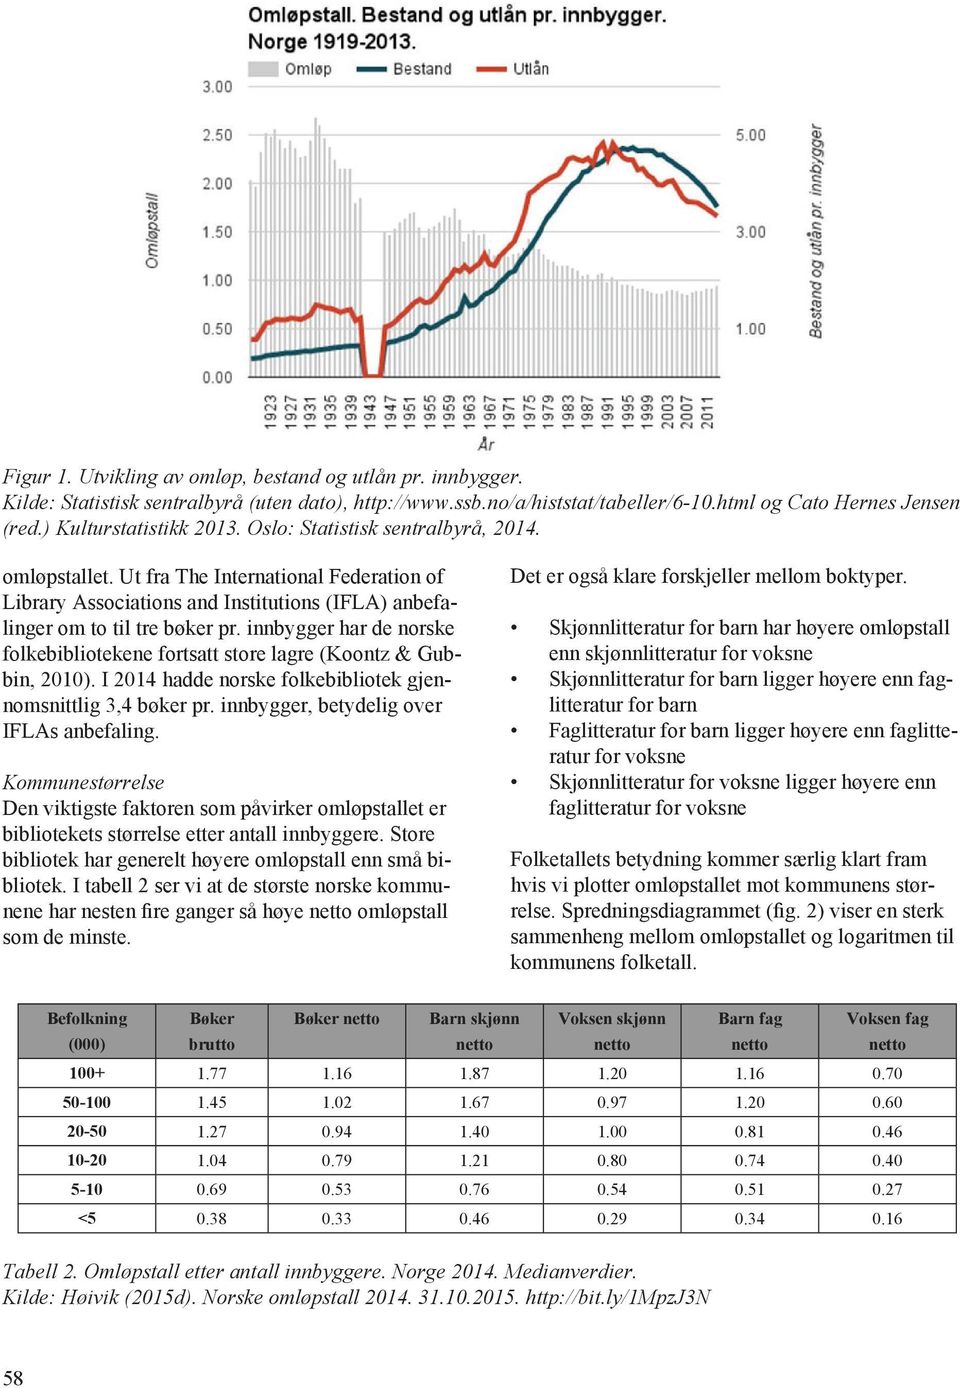 innbygger har de norske folkebibliotekene fortsatt store lagre (Koontz & Gubbin, 2010). I 2014 hadde norske folkebibliotek gjennomsnittlig 3,4 bøker pr. innbygger, betydelig over IFLAs anbefaling.